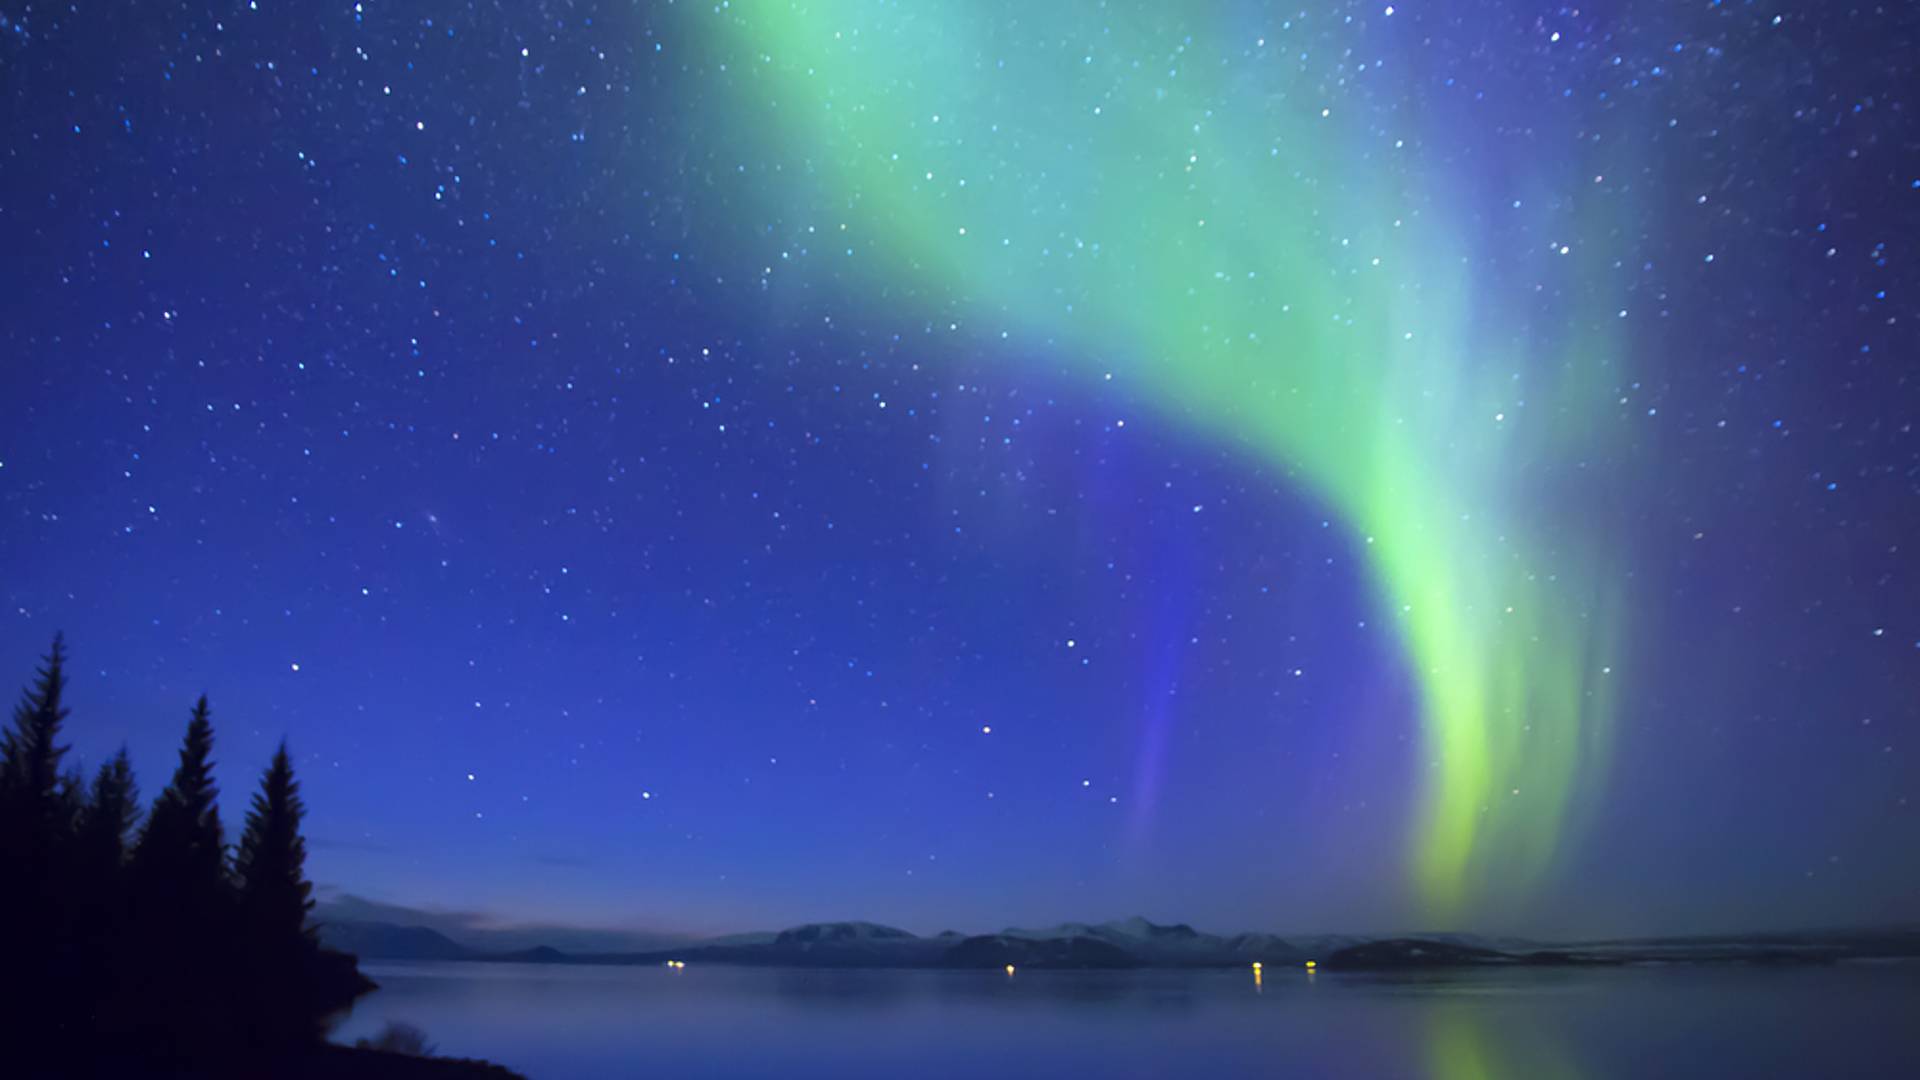 Un grand week-end à Reykjavik à la recherche des aurores boréales